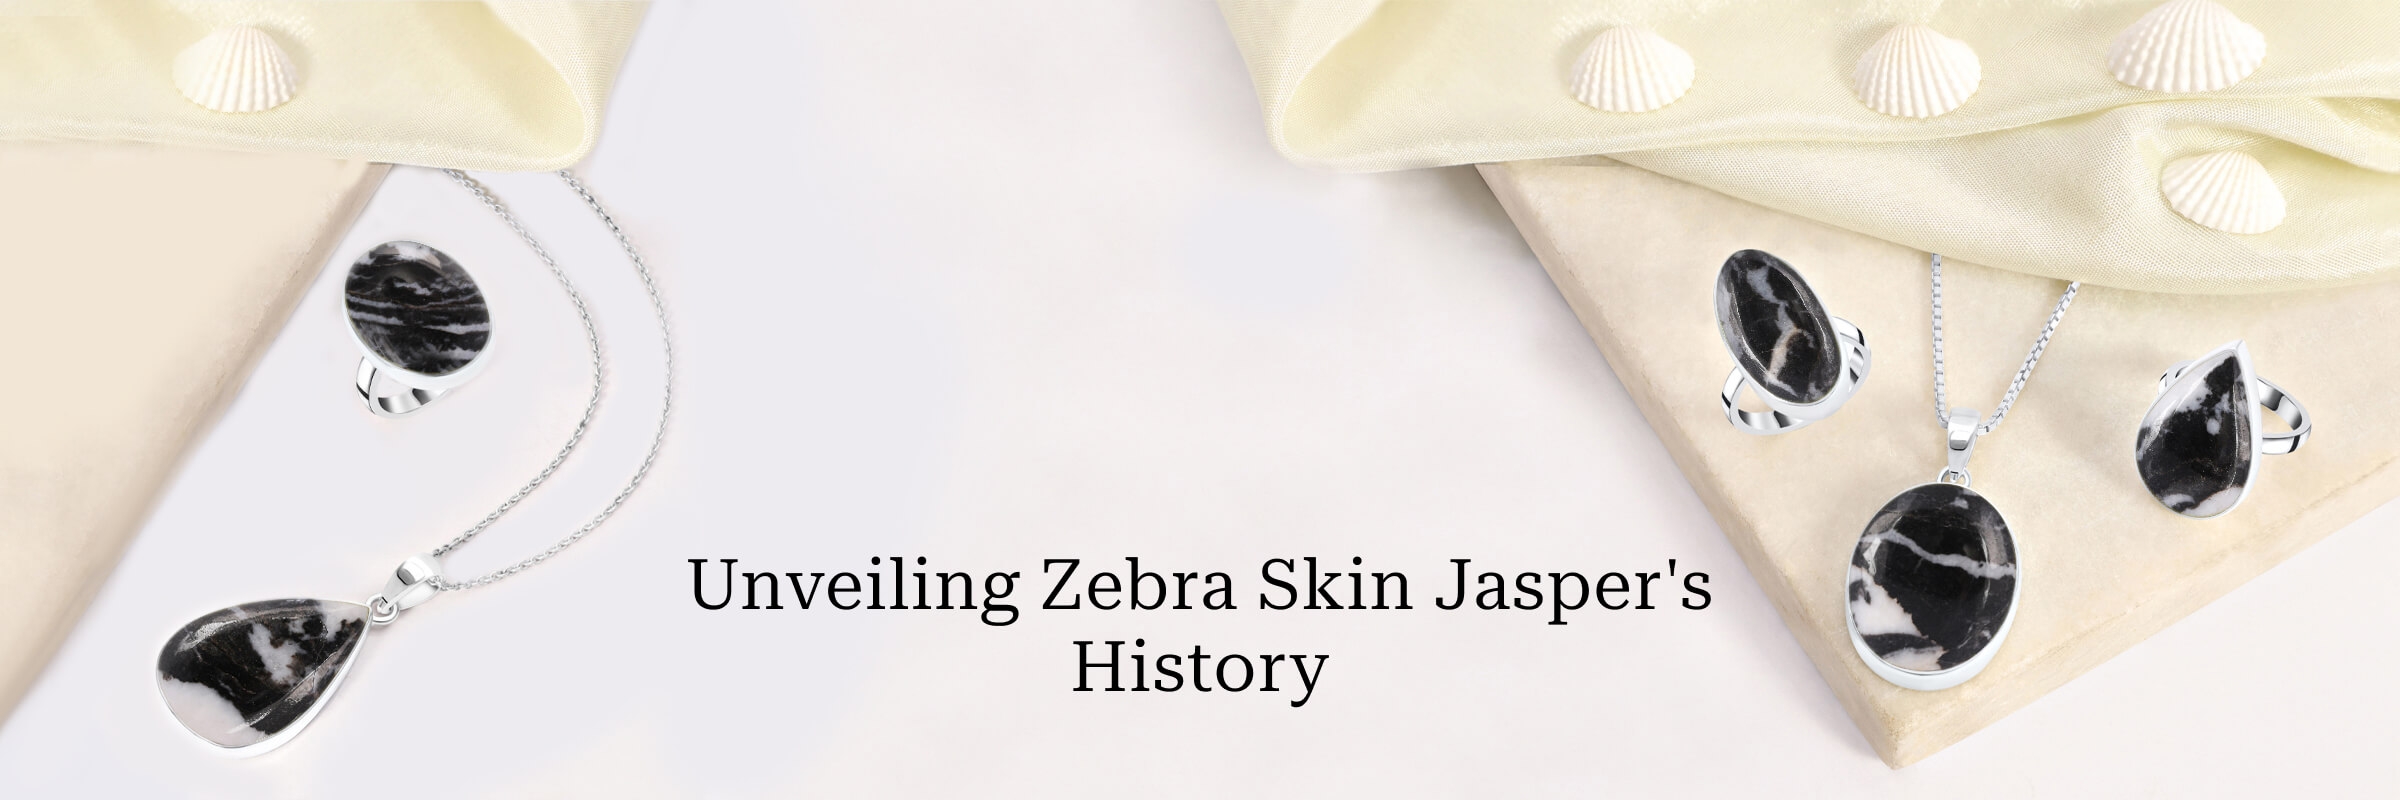 Zebra Skin Jasper Stone - Its History & Formation